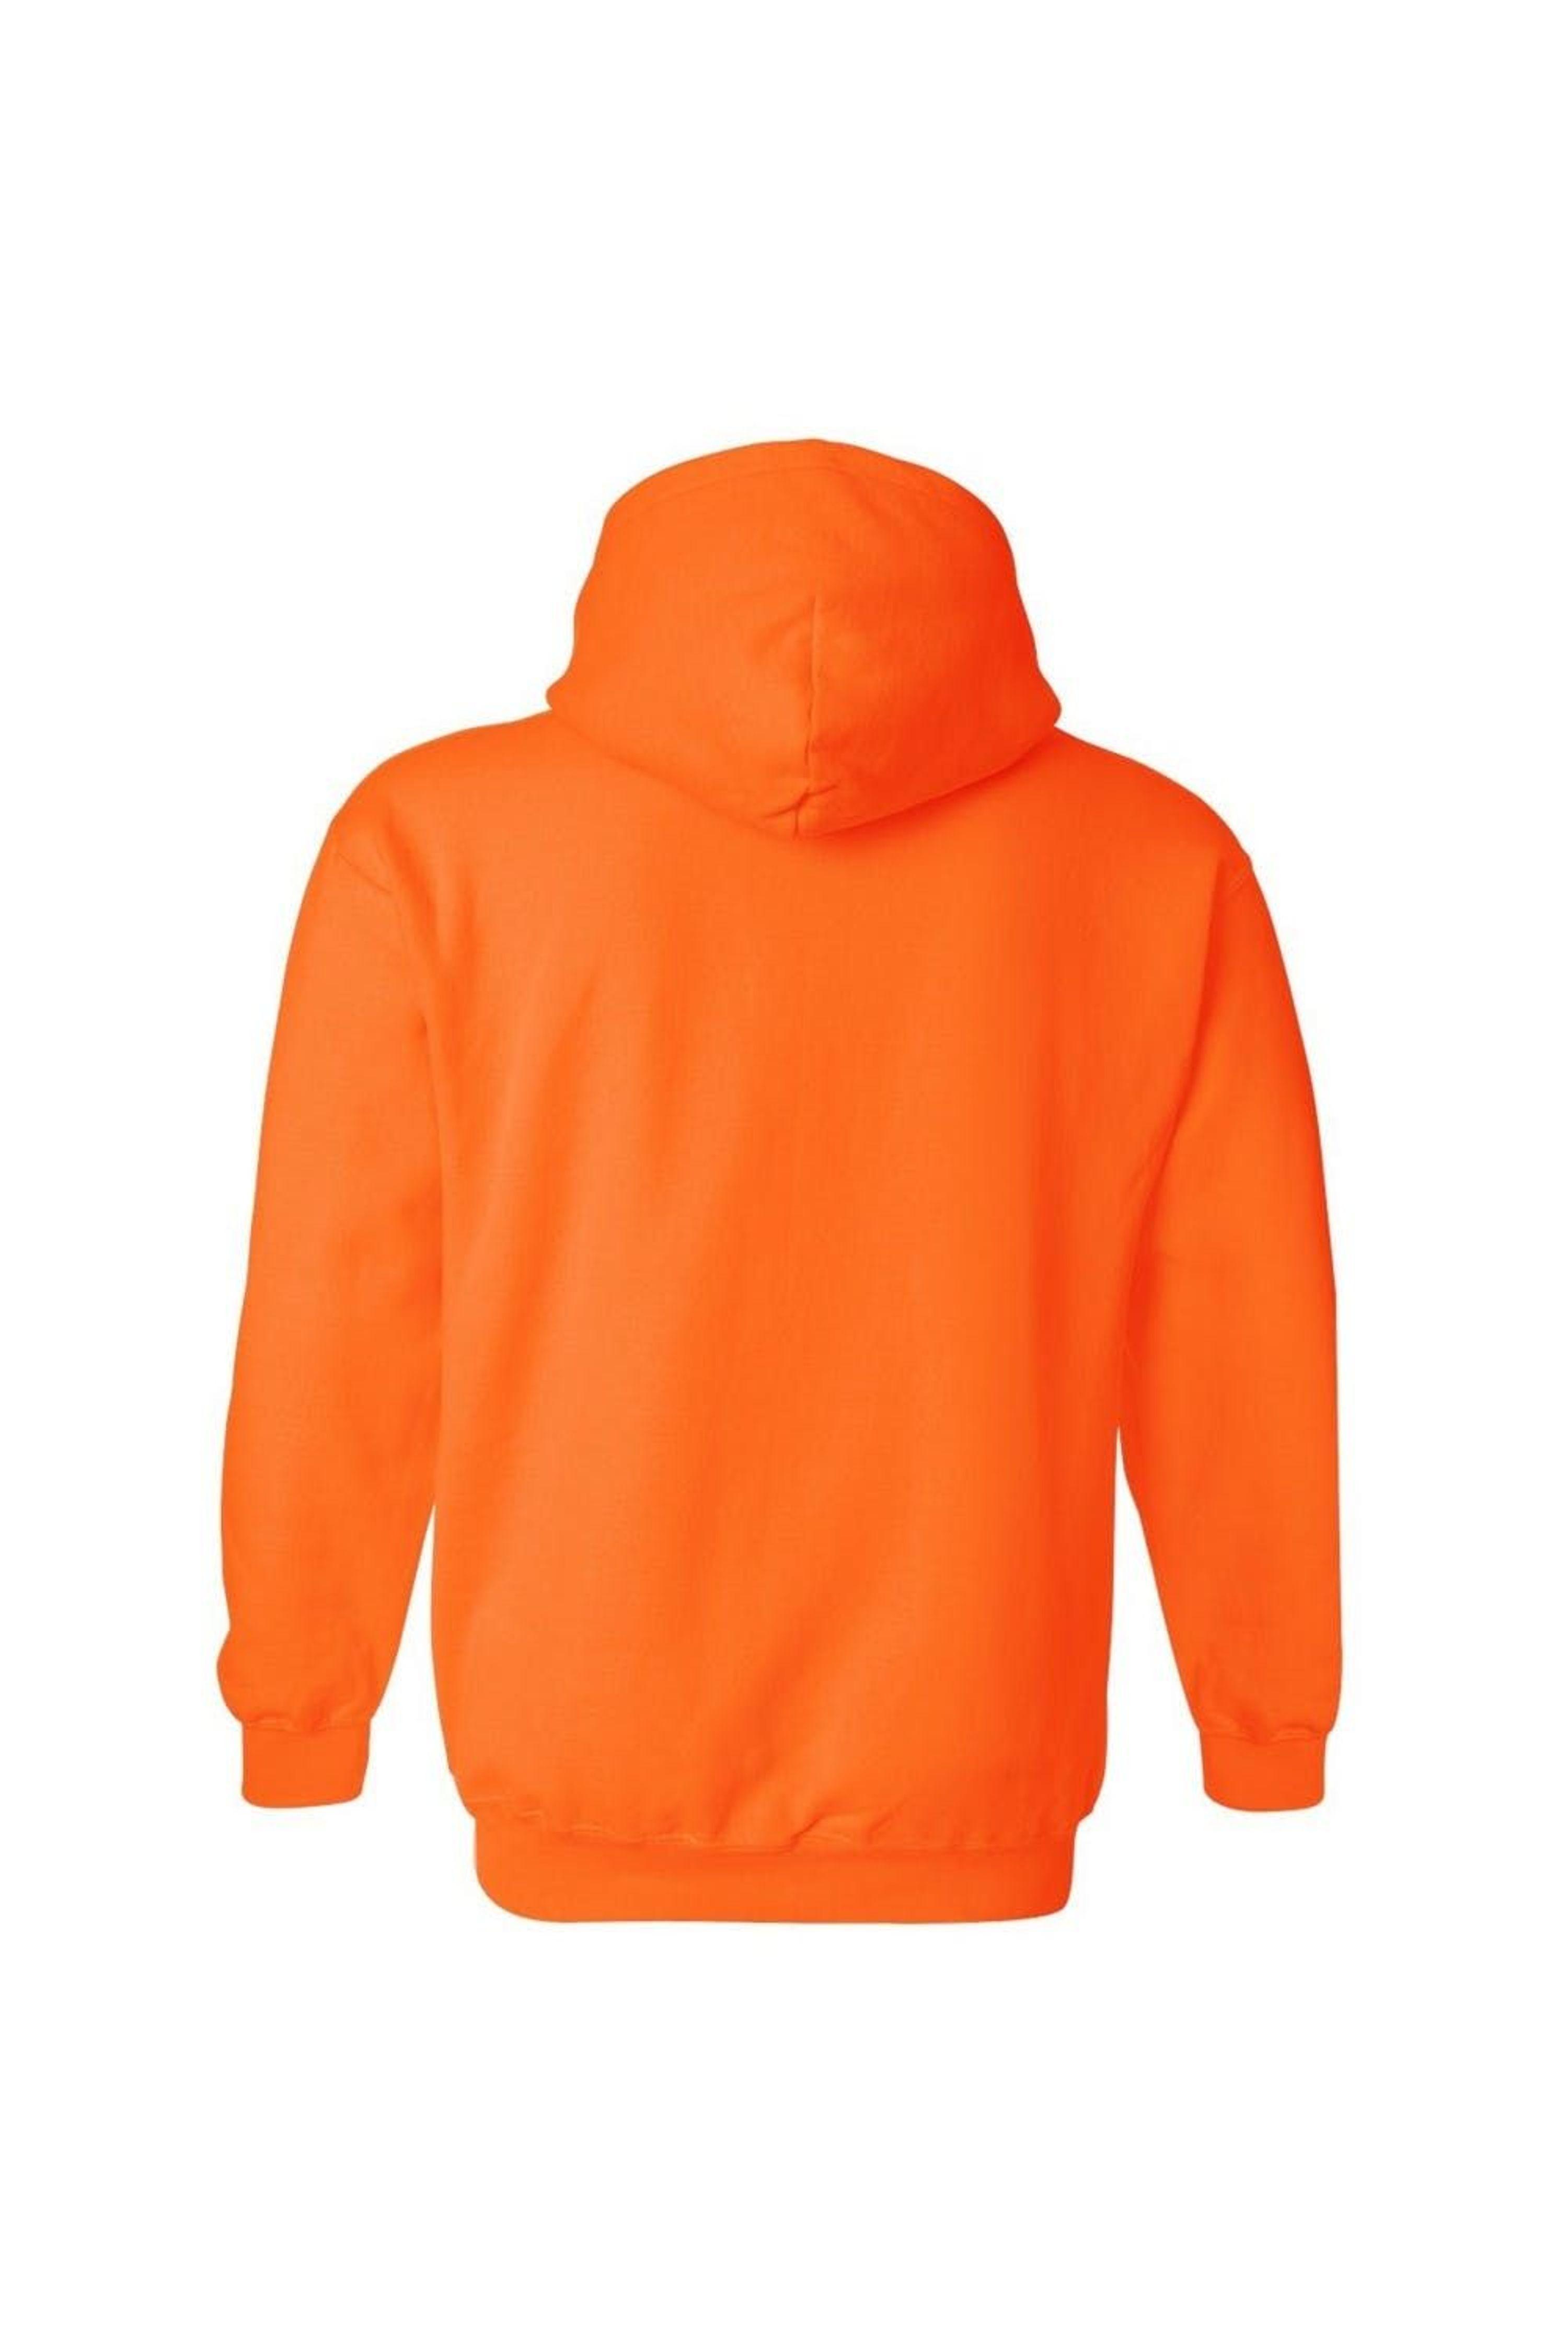 Gildan Heavy Blend Adult Hooded Sweatshirt/hoodie in Orange | Lyst